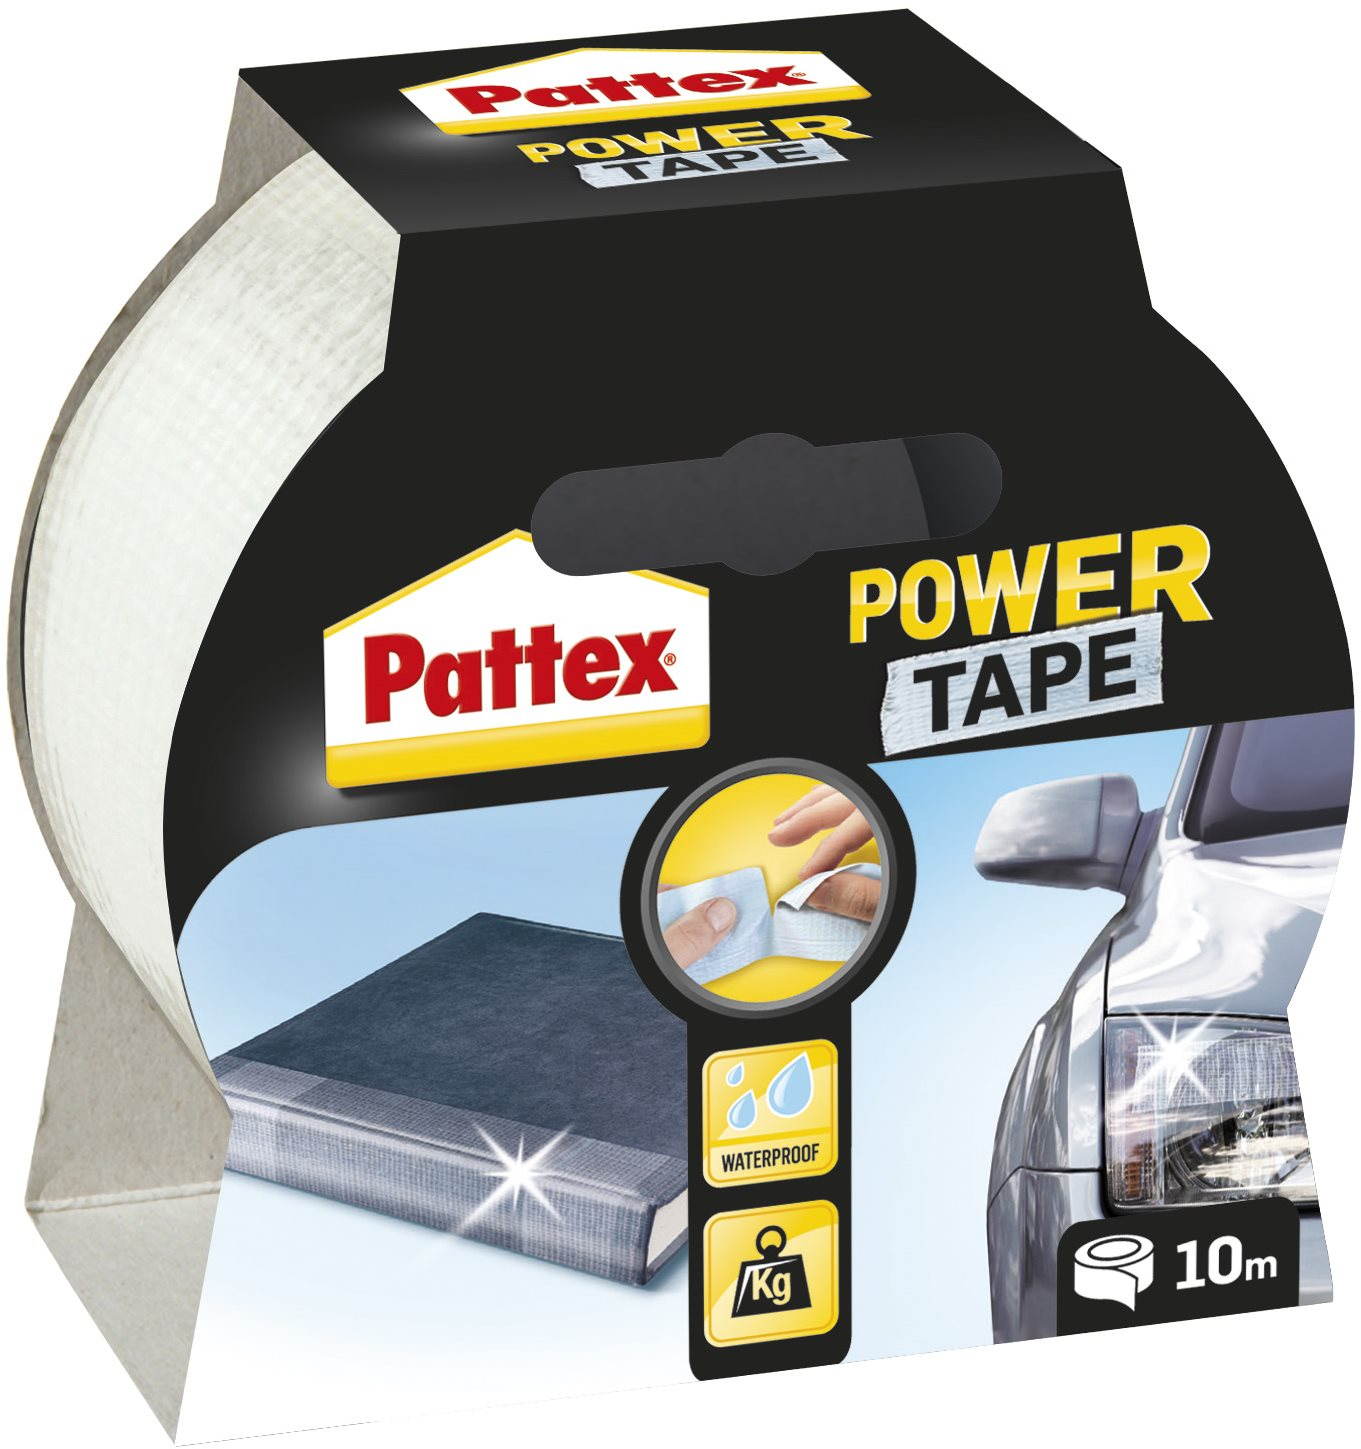 Ragasztó szalag Pattex Power tape átlátszó 10 m